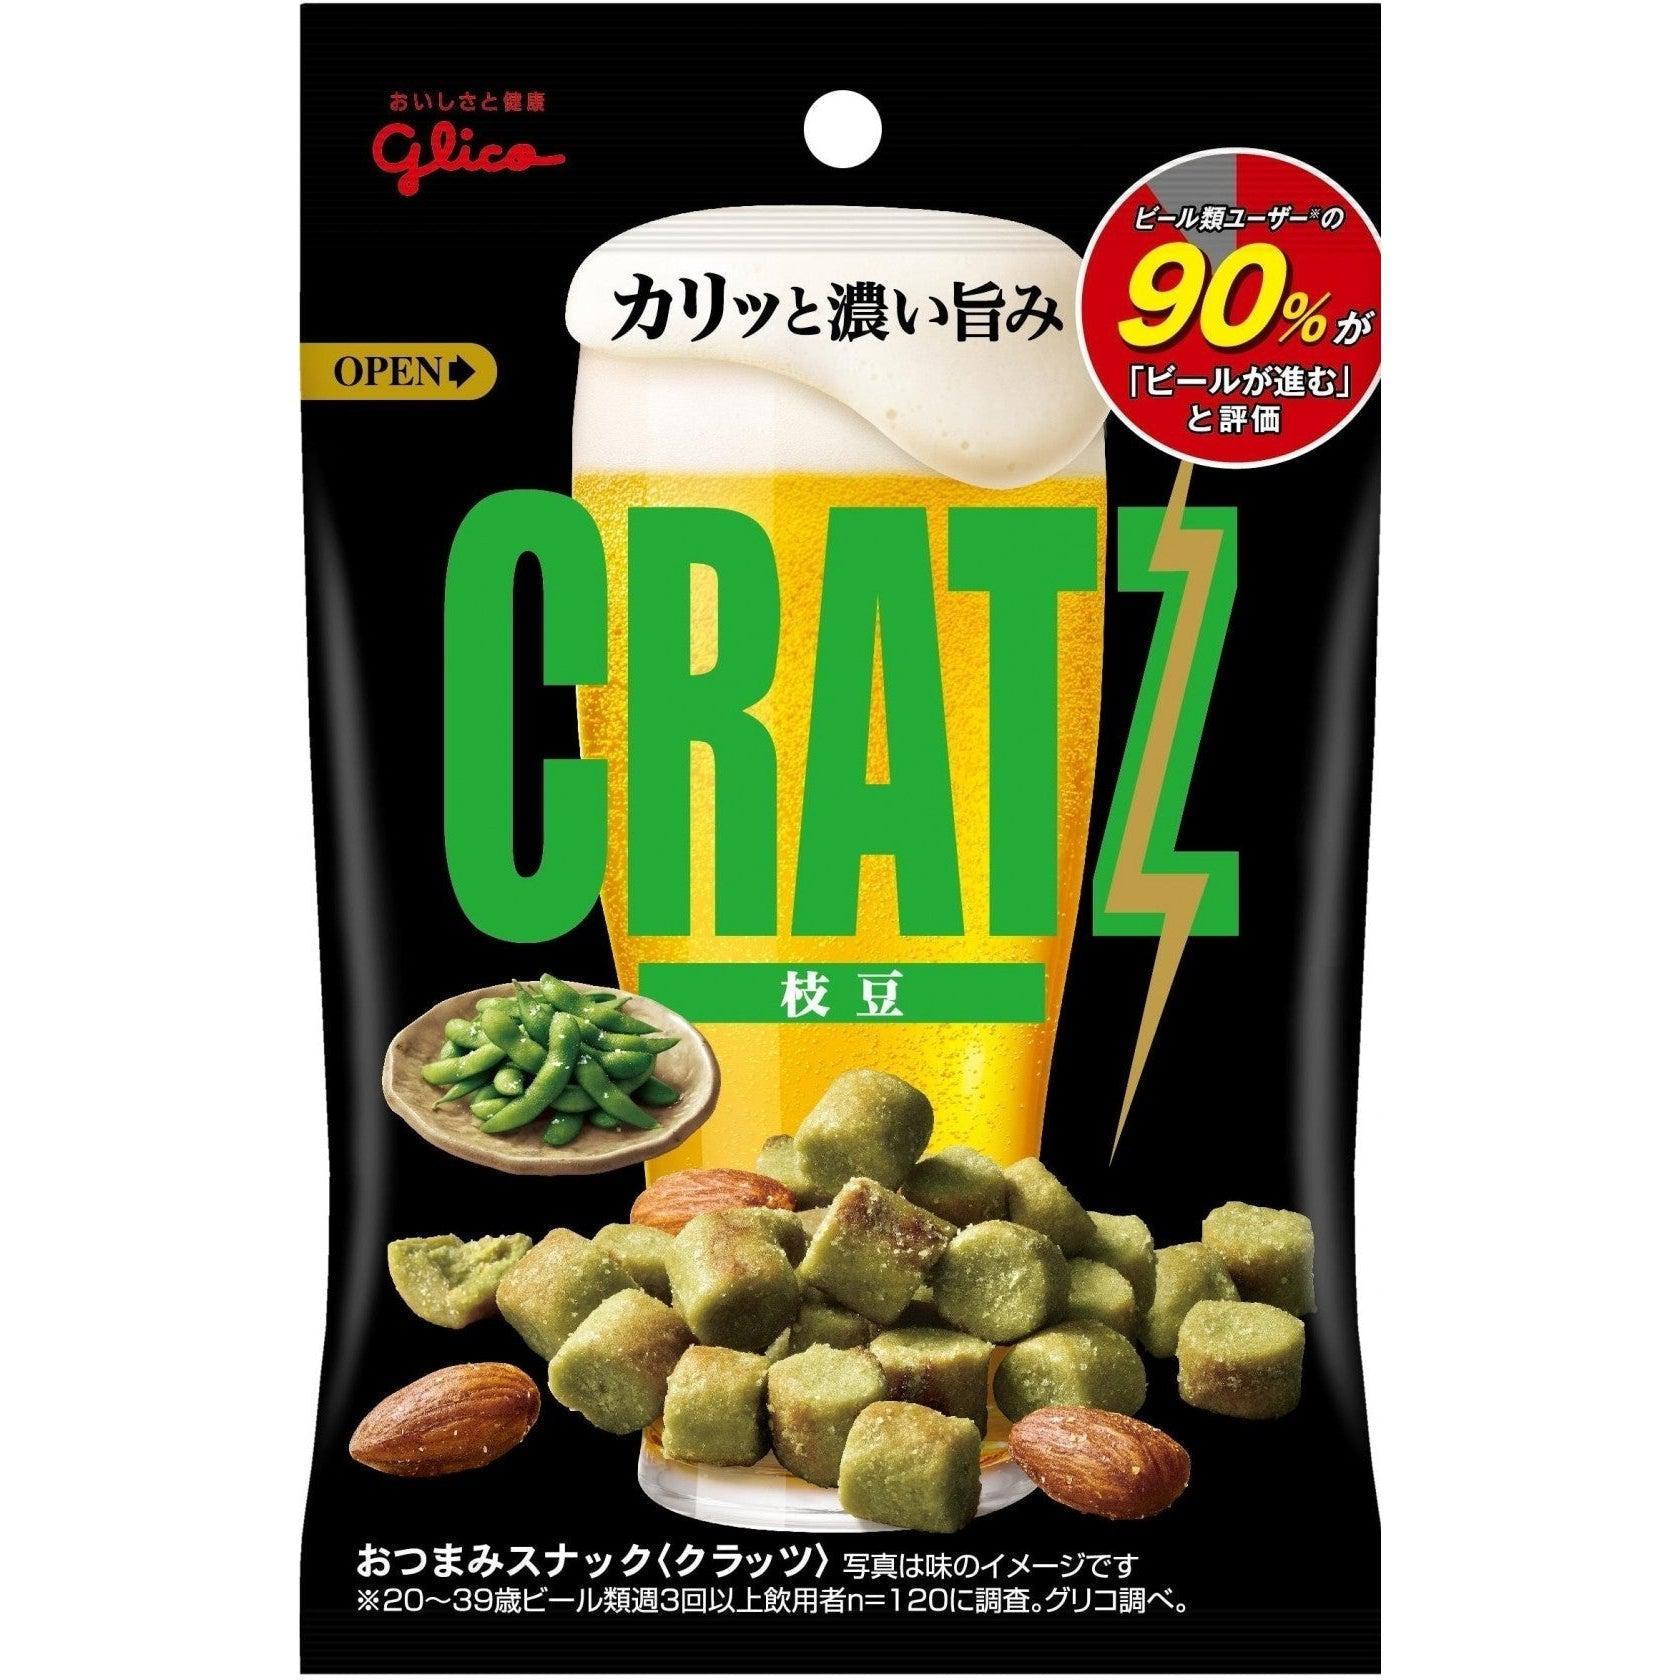 Glico Cratz Edamame Snack (Pack of 10)